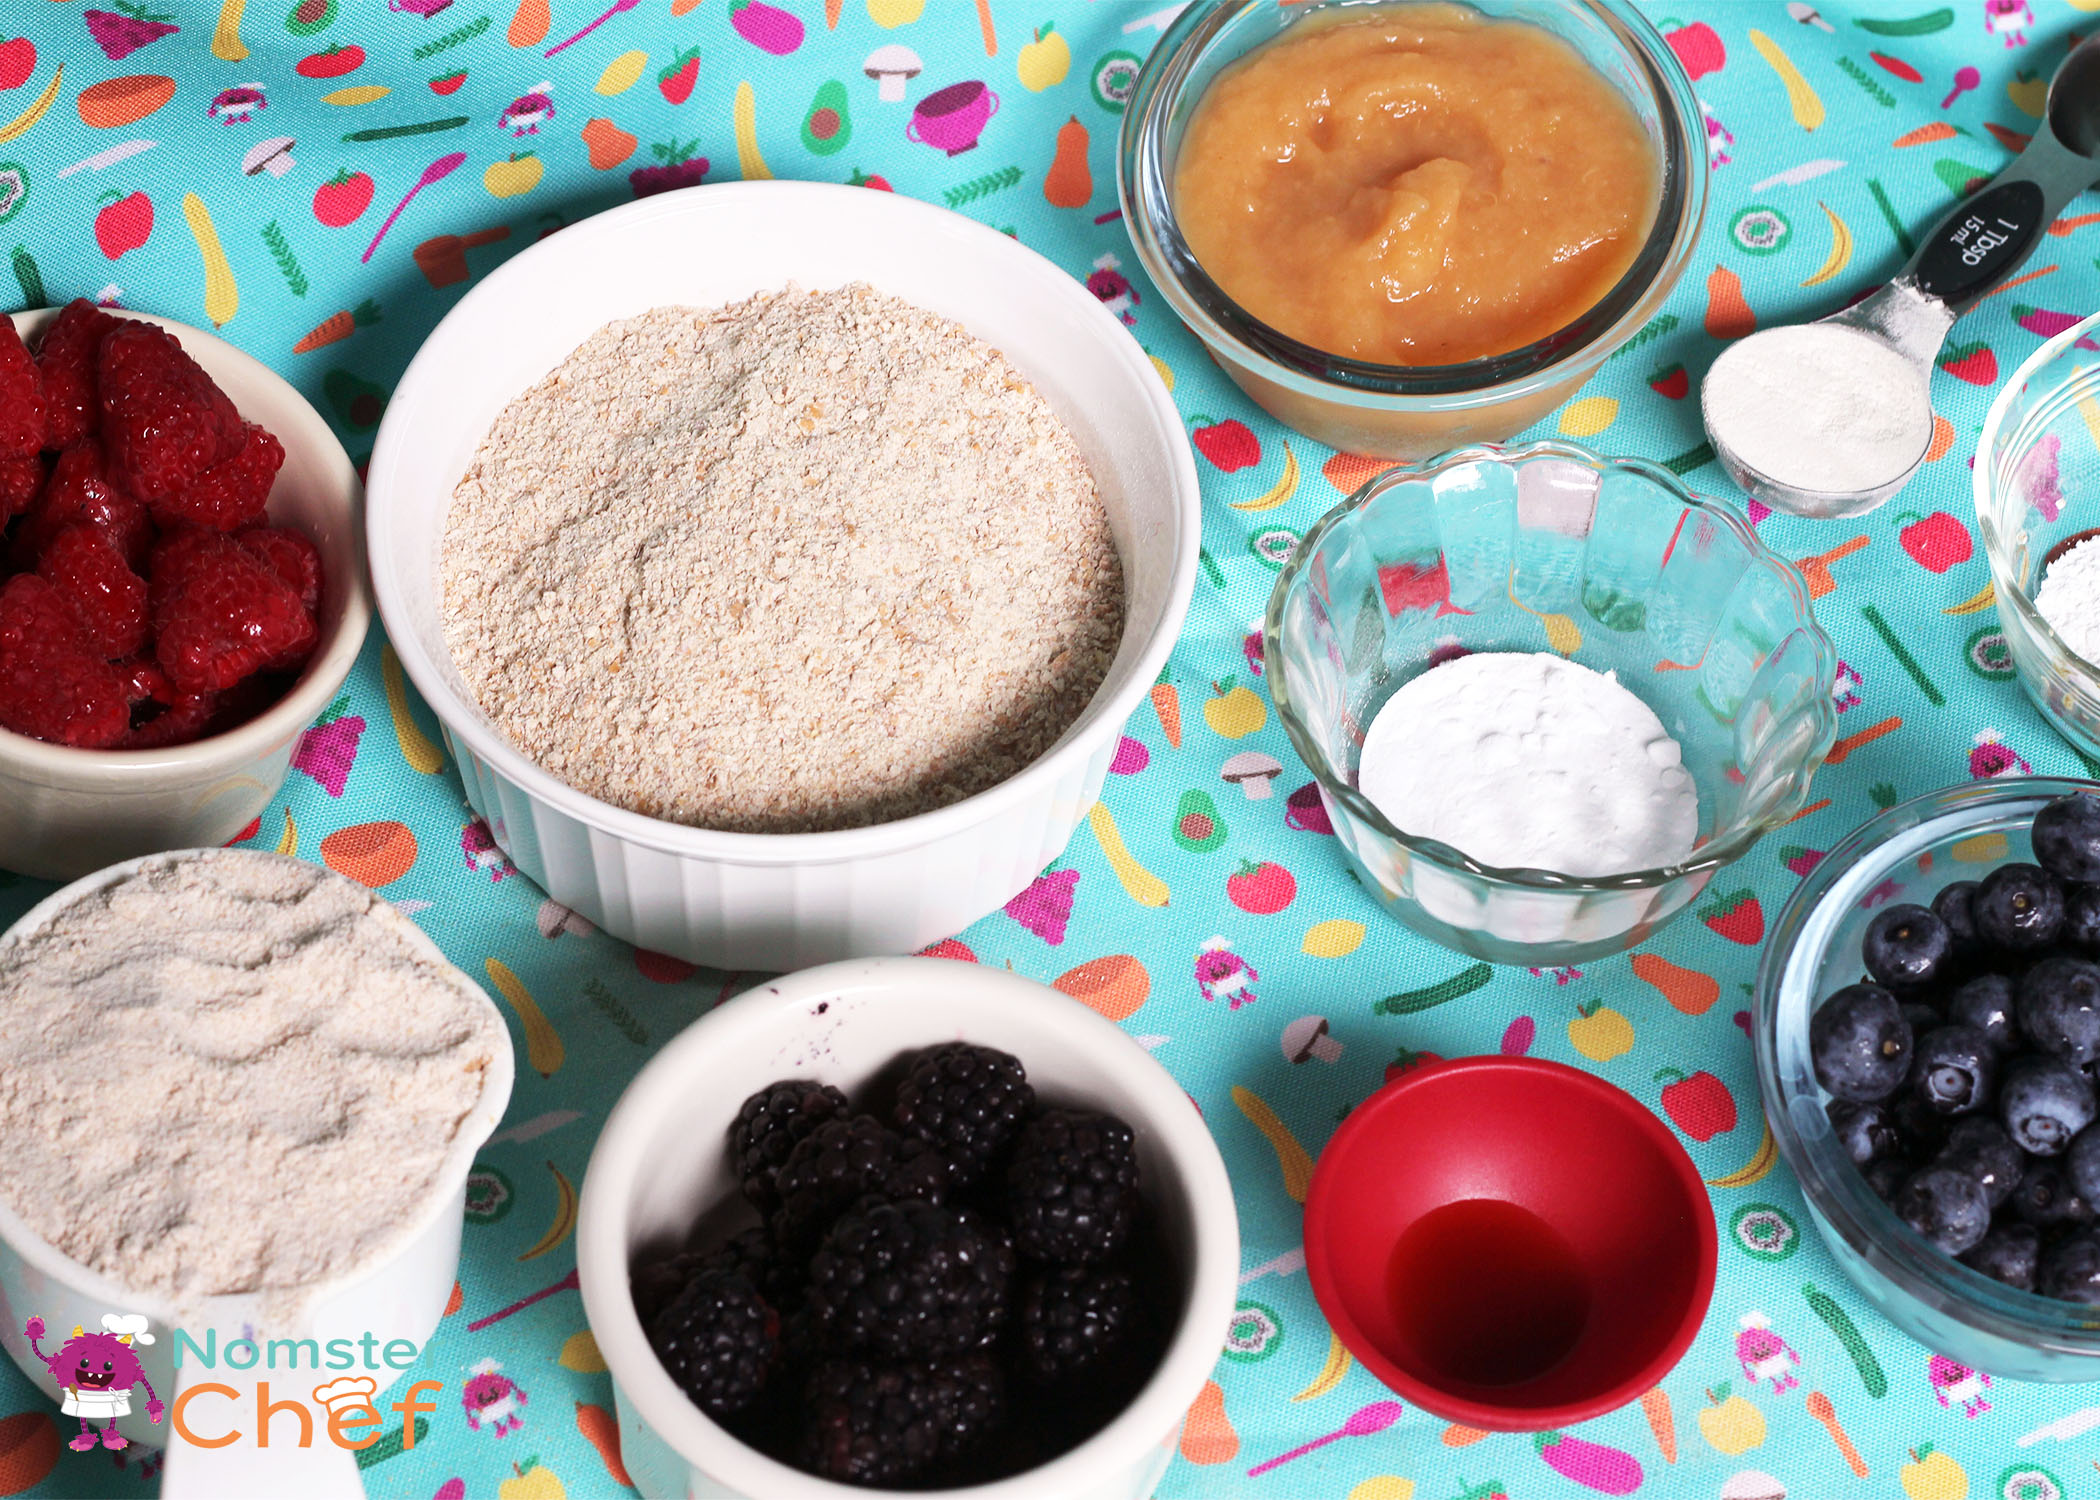 Baking 101: Liquid vs Dry Measuring Cups - Kirbie's Cravings